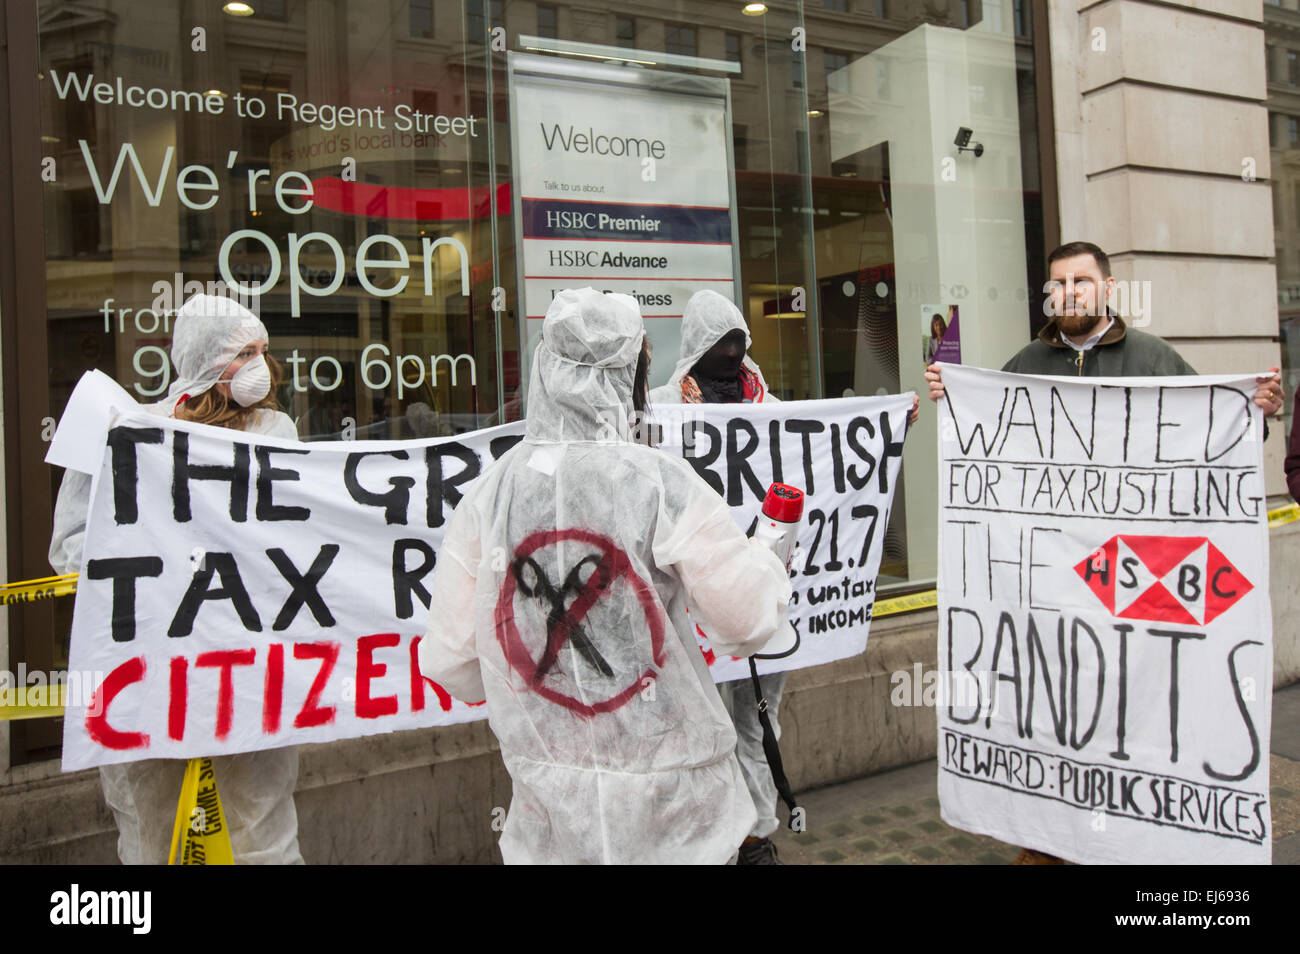 Regno Unito intonso dimostrazione presso HSBC Regent street contro le banche' evasione fiscale chiedendo George Osbourne a farle pagare le imposte Foto Stock